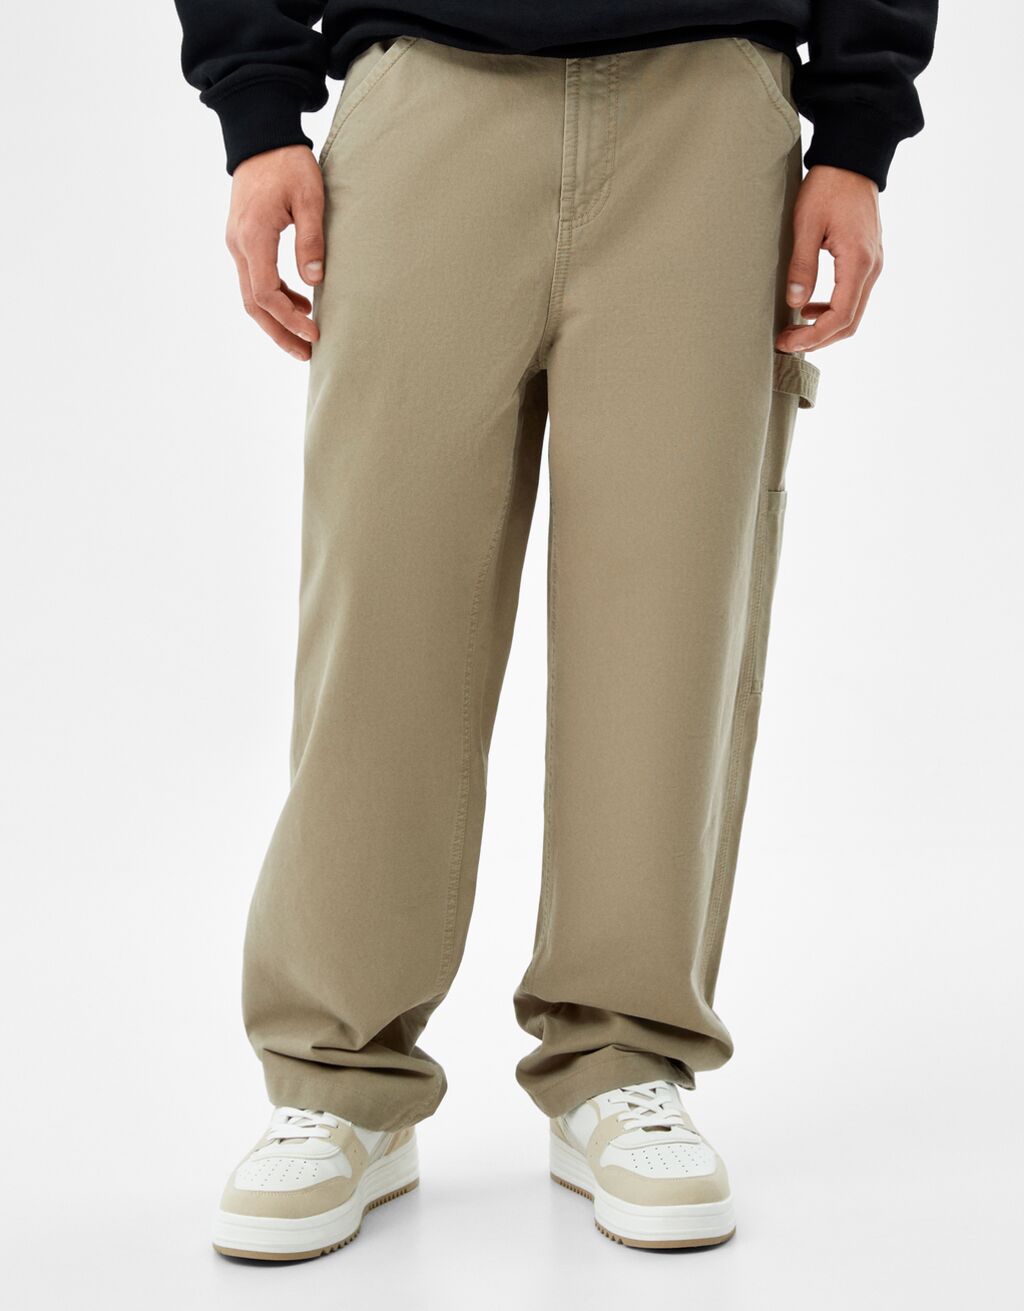 Wide-leg cotton carpenter trousers